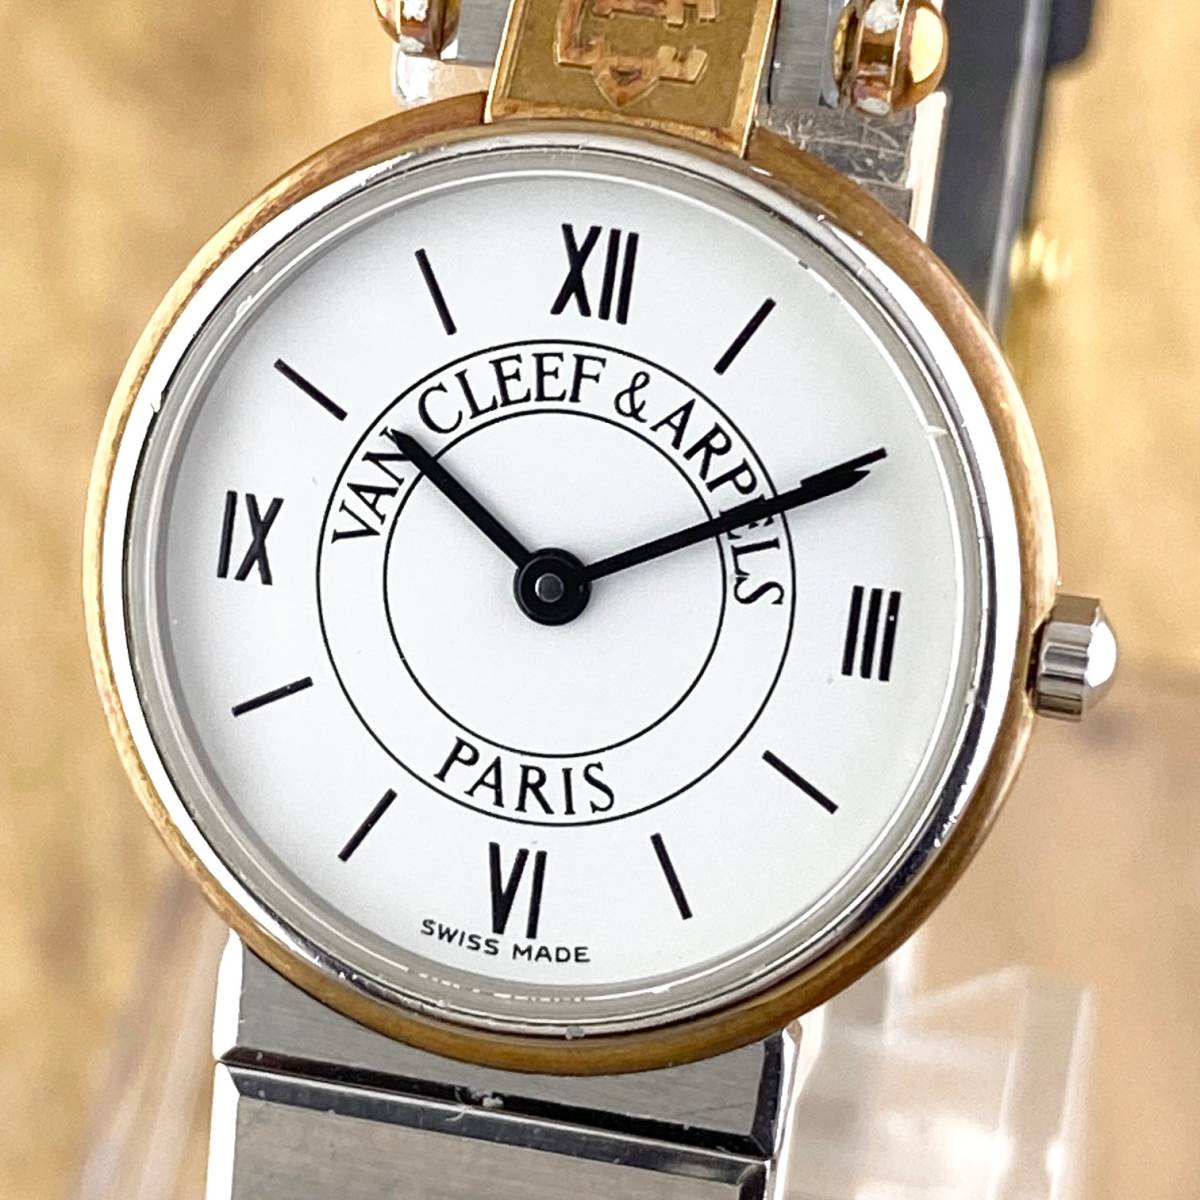 のオンラインショップ Vancleef&Arpels ヴィンテージ 腕時計 www.m